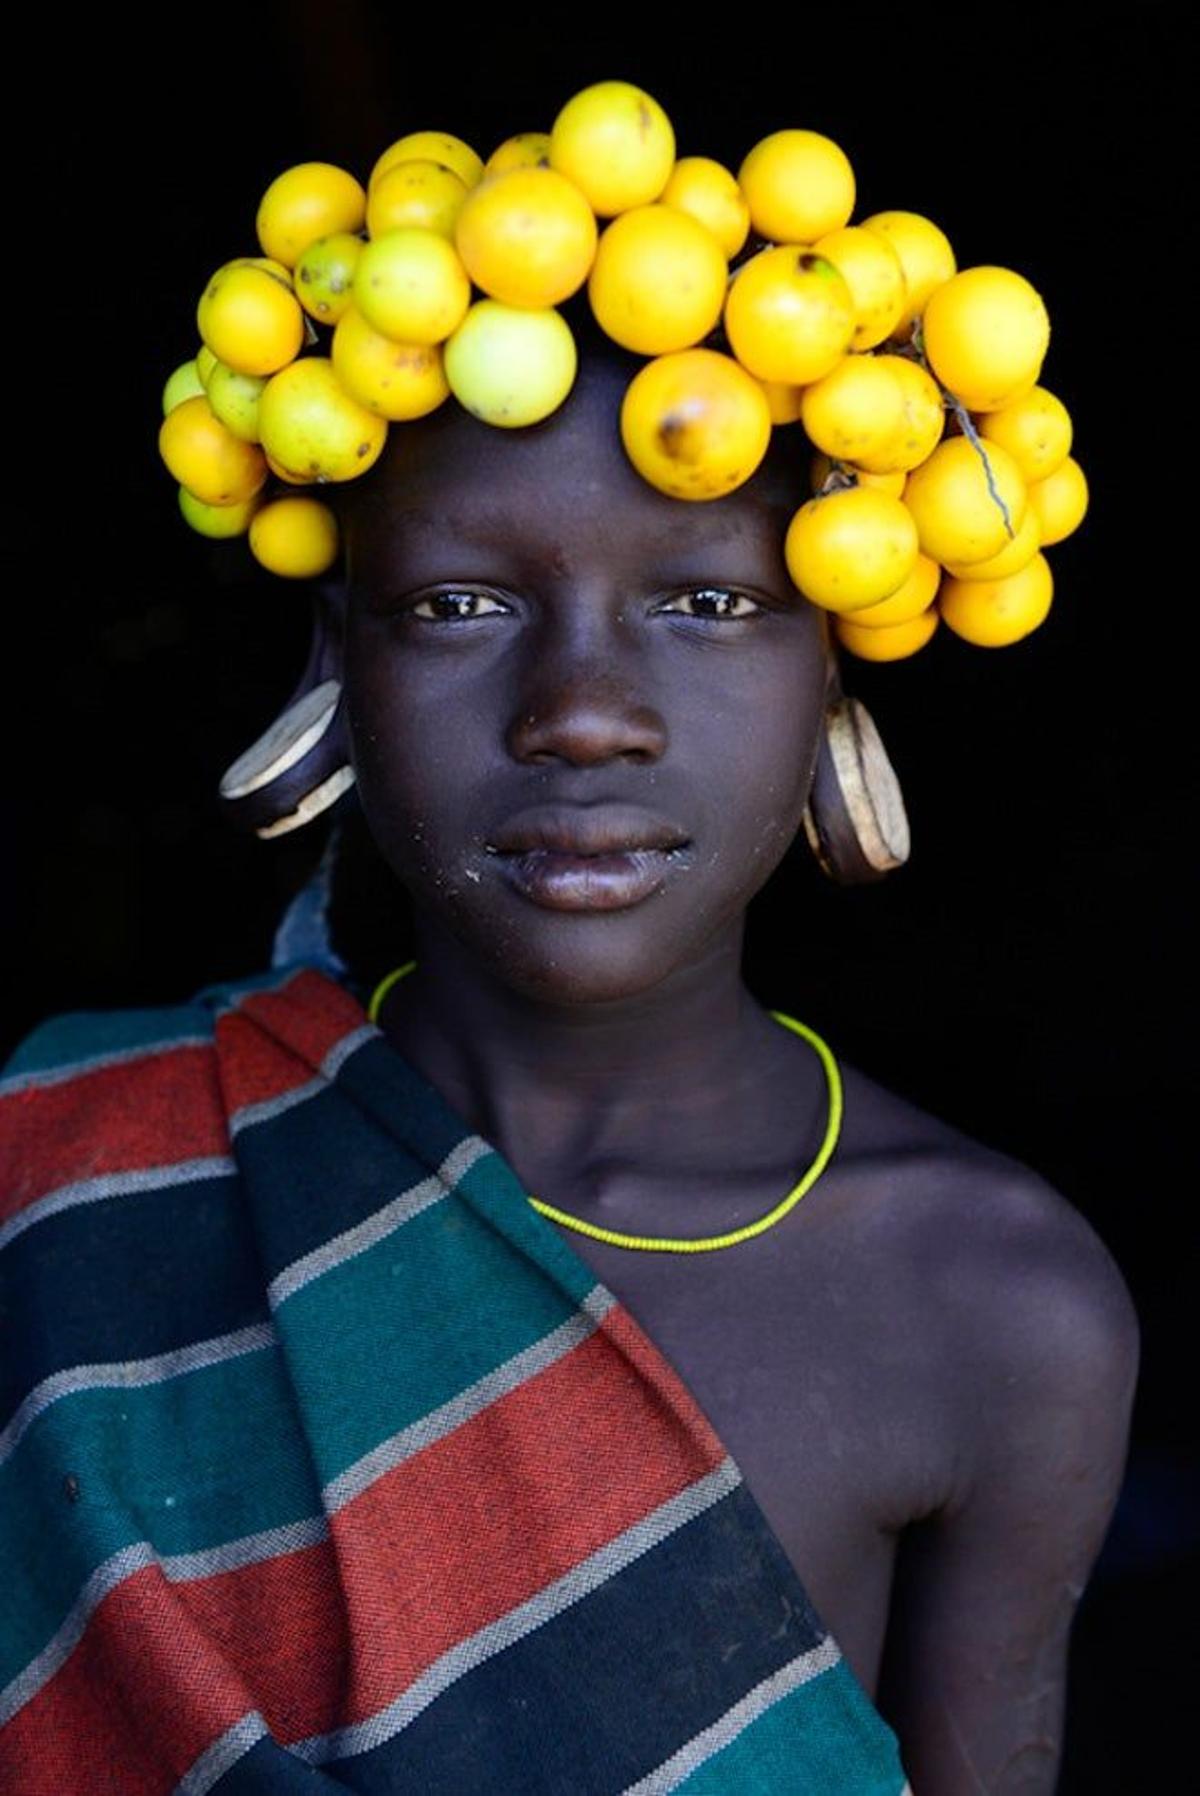 Chica mursi con frutos como decoración en el pelo